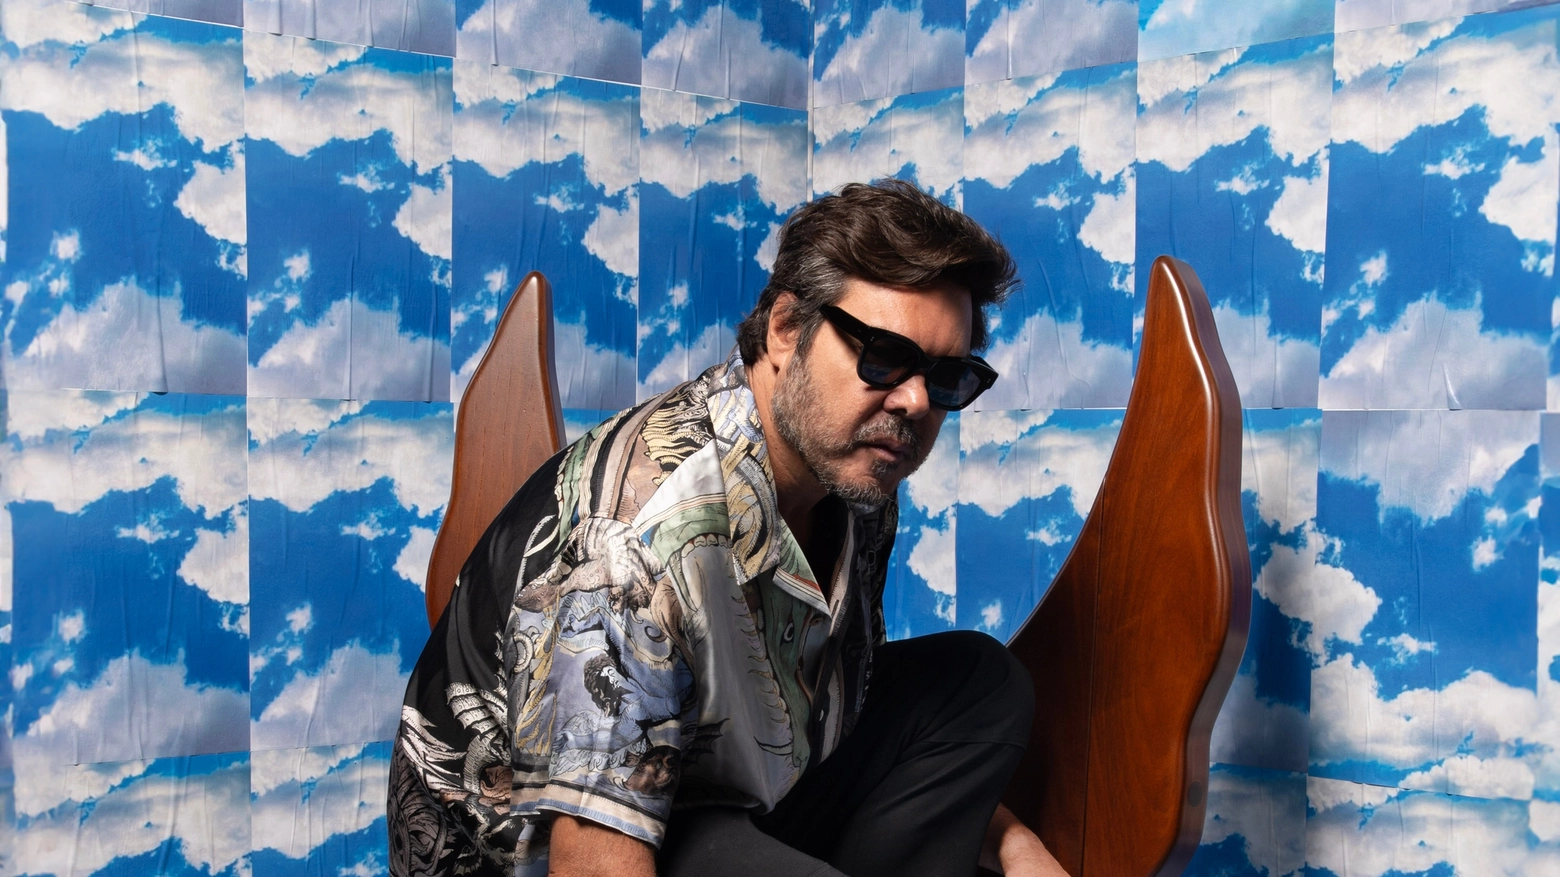 L’irriverente artista brasiliano, alla sua 18esima partecipazione al Fuorisalone, porta una sedia in legno pregiato ispirata agli angeli e ai demoni